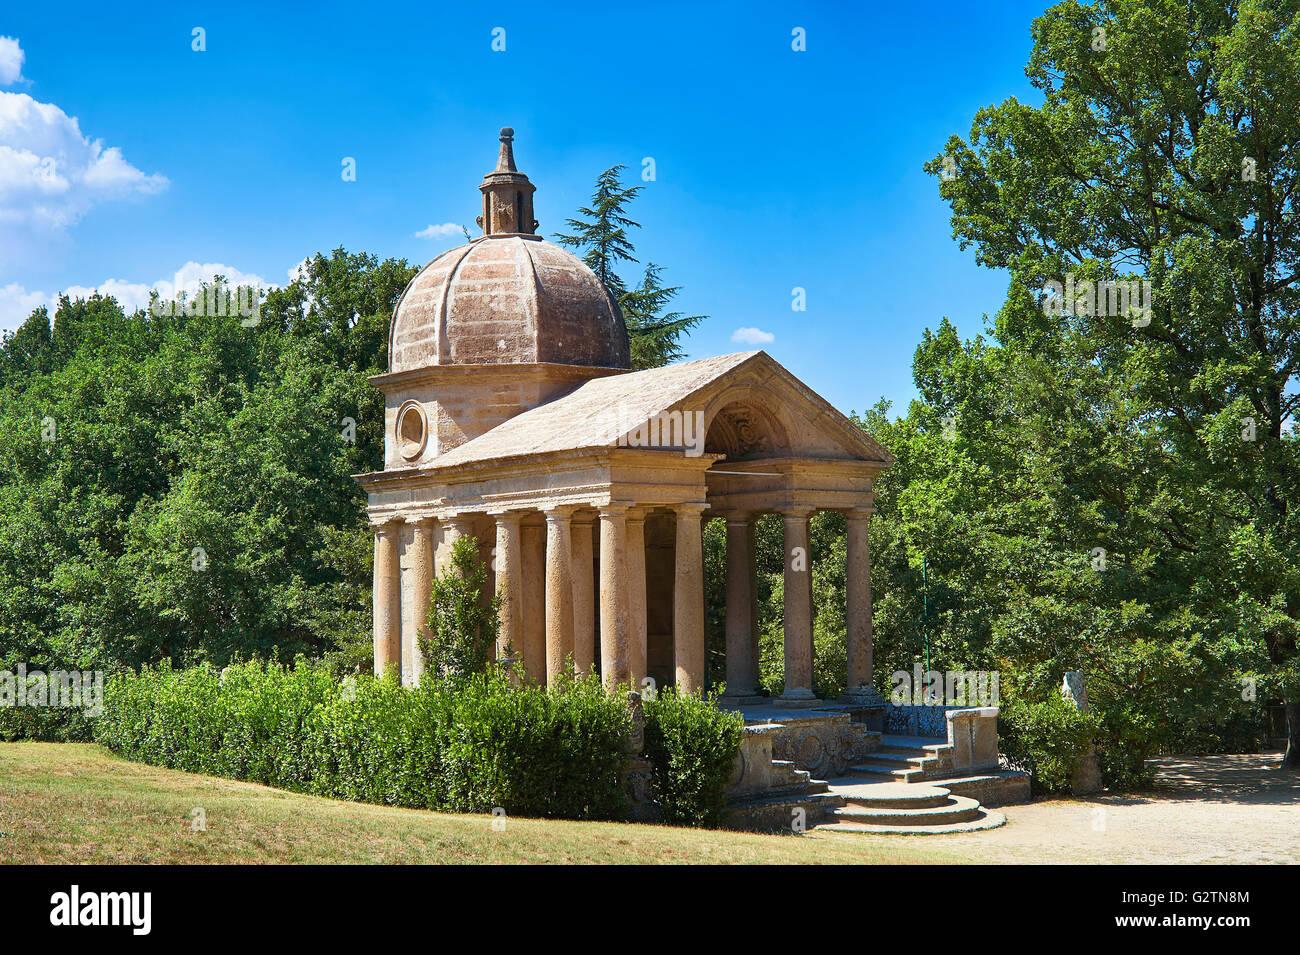 Mausoleum, Sacro Bosco, Sacred Wood, Park of the Monsters, Parco dei Mostri, Bomarzo, Lazio, Italy Stock Photo